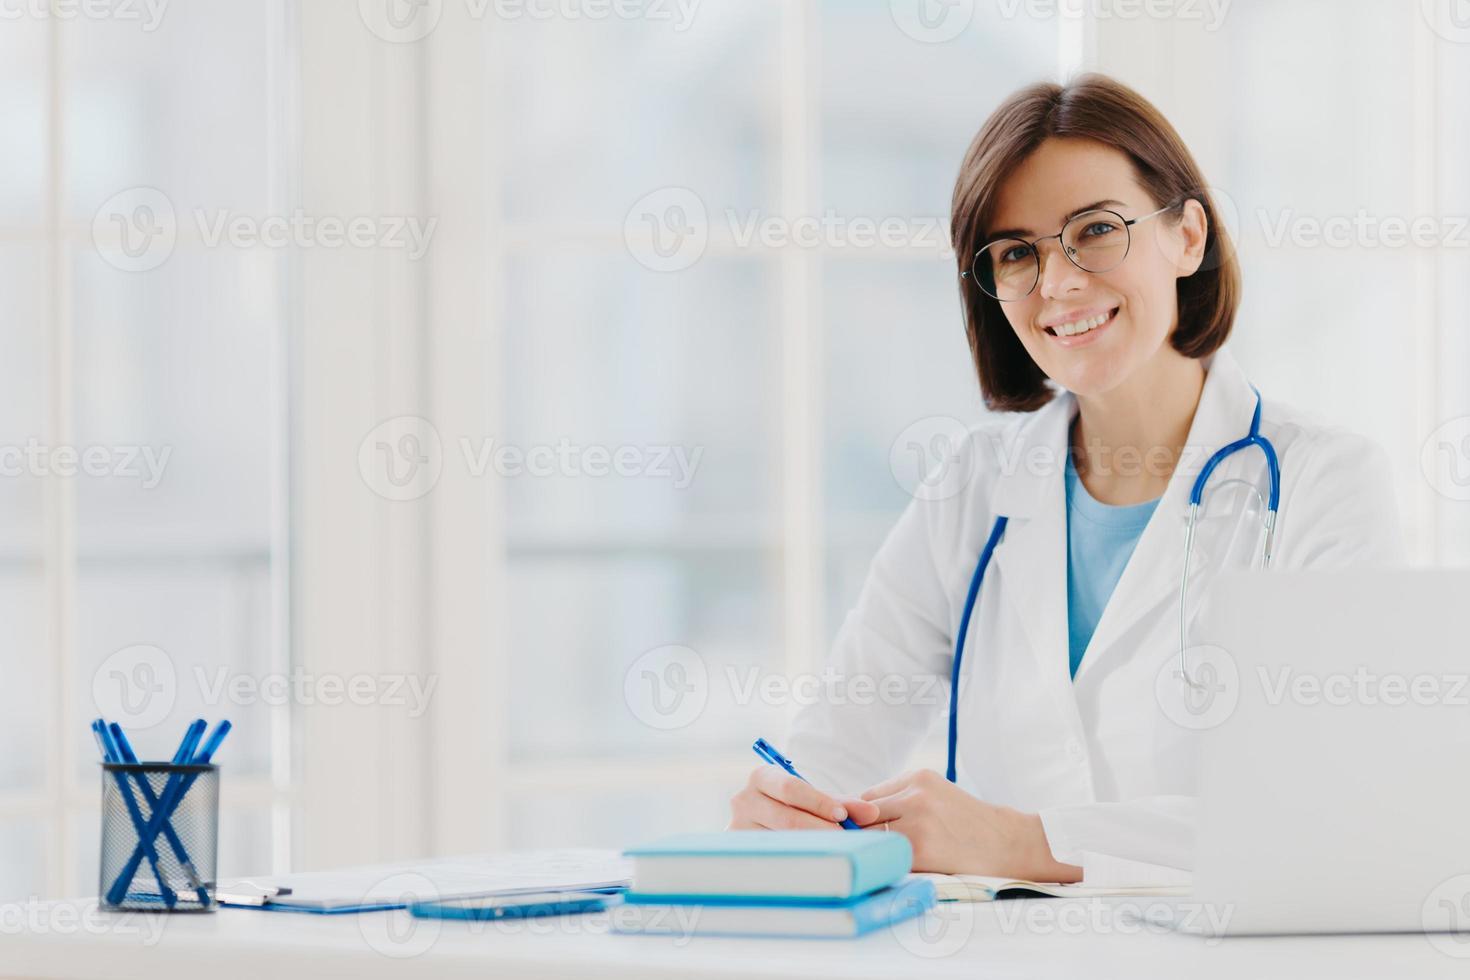 professionelle ärztin schreibt notizen auf, posiert mit laptop am schreibtisch im büro, trägt weißen kittel, brille und phonendoskop um den hals, schaut durch medizinische dokumente. Gesundheitskonzept foto